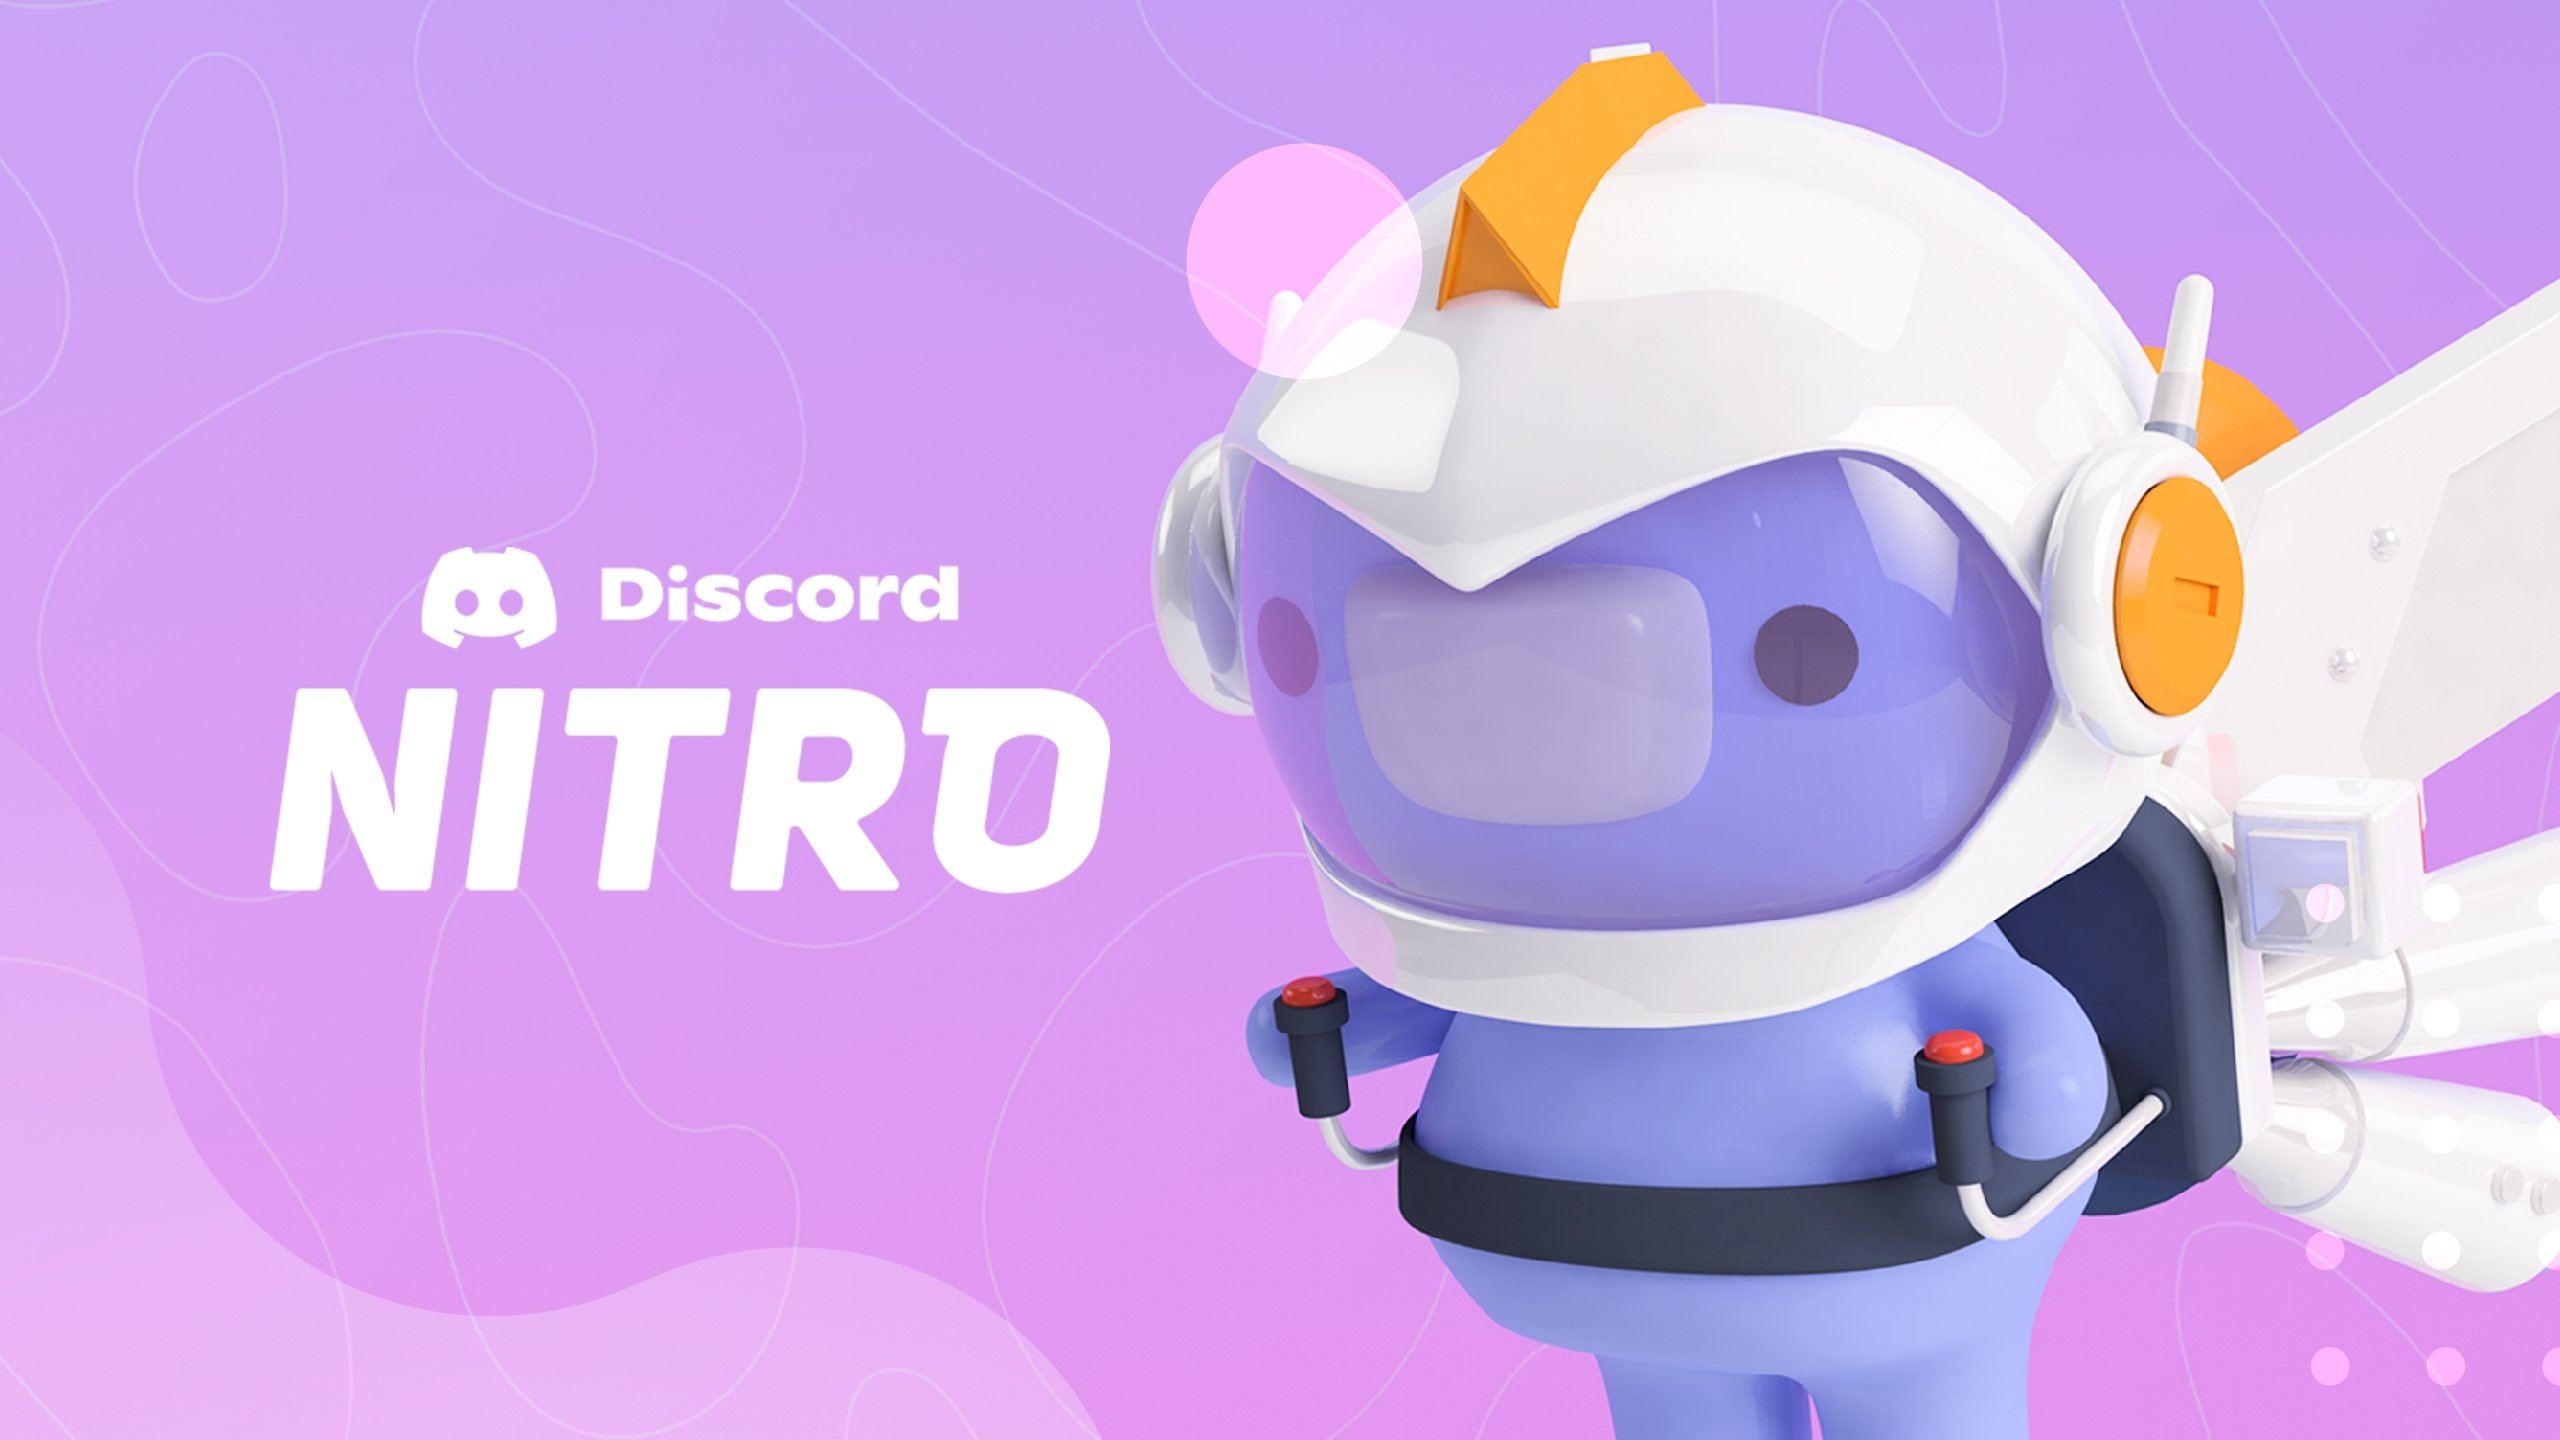 Discord Nitro agora permite oferecer subscrição a amigos